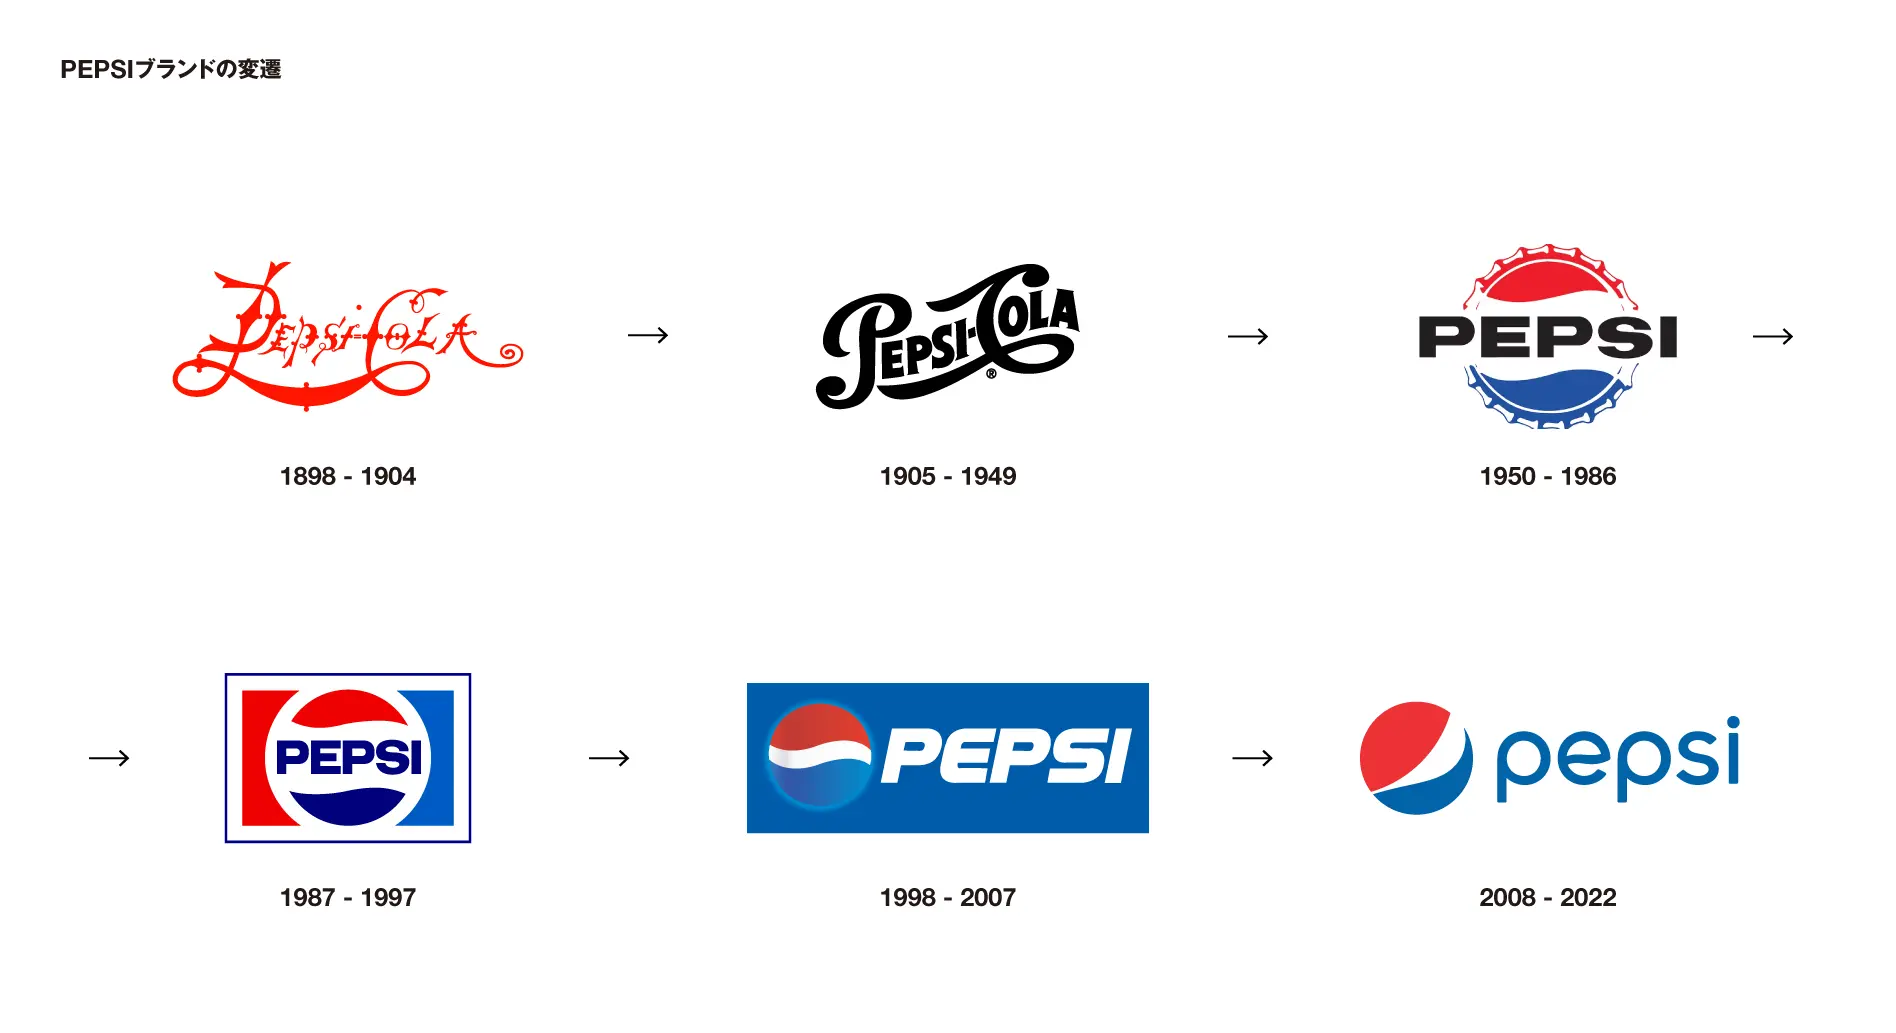 PEPSI（ペプシ）のブランドロゴ刷新事例とその分析：PEPSIブランドの変遷